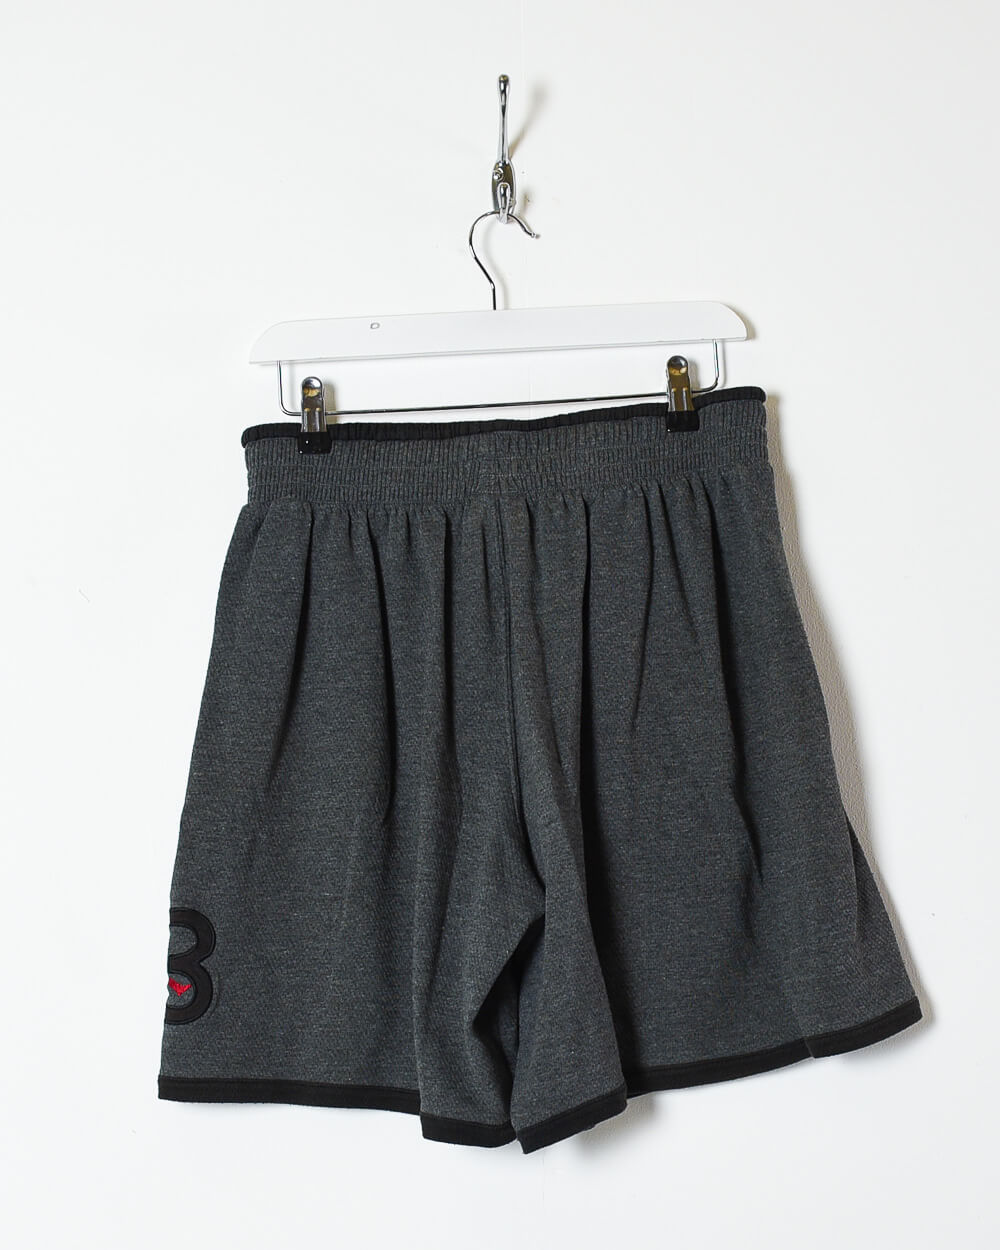 Grey Nike Jordan 23 Shorts - Large